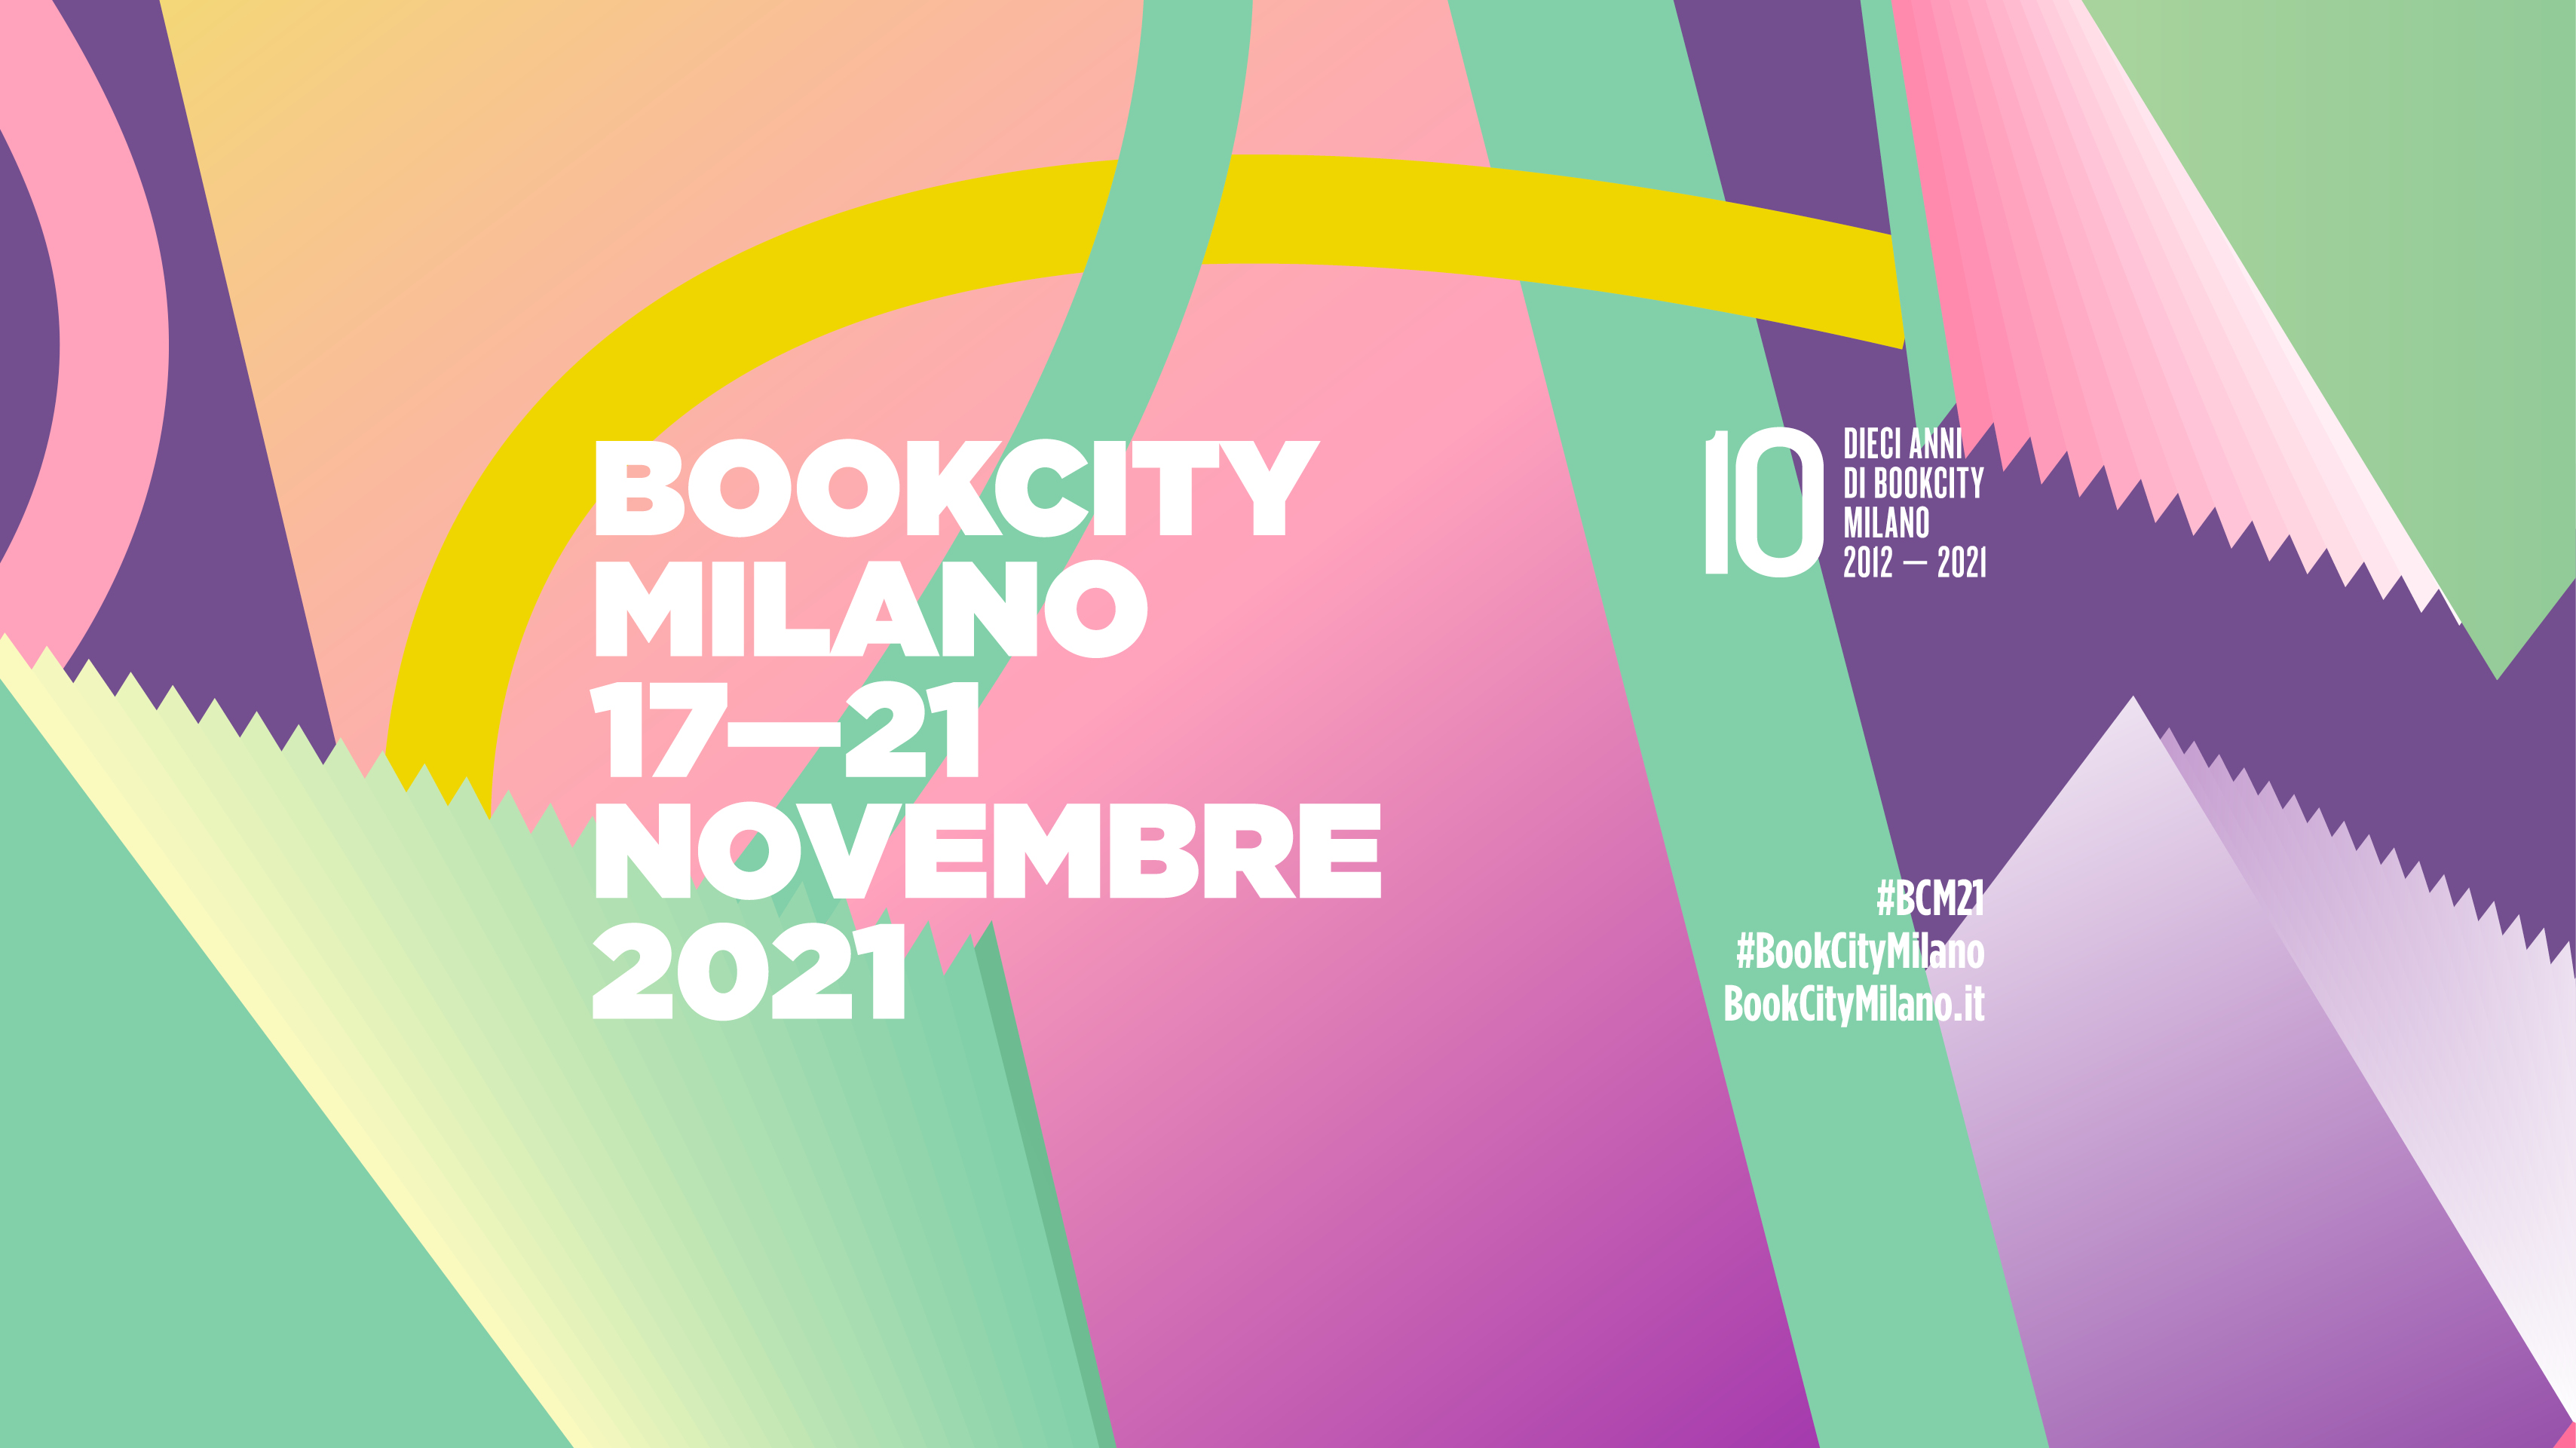 Bookcity Milano 2021 con oltre 1400 eventi: il programma